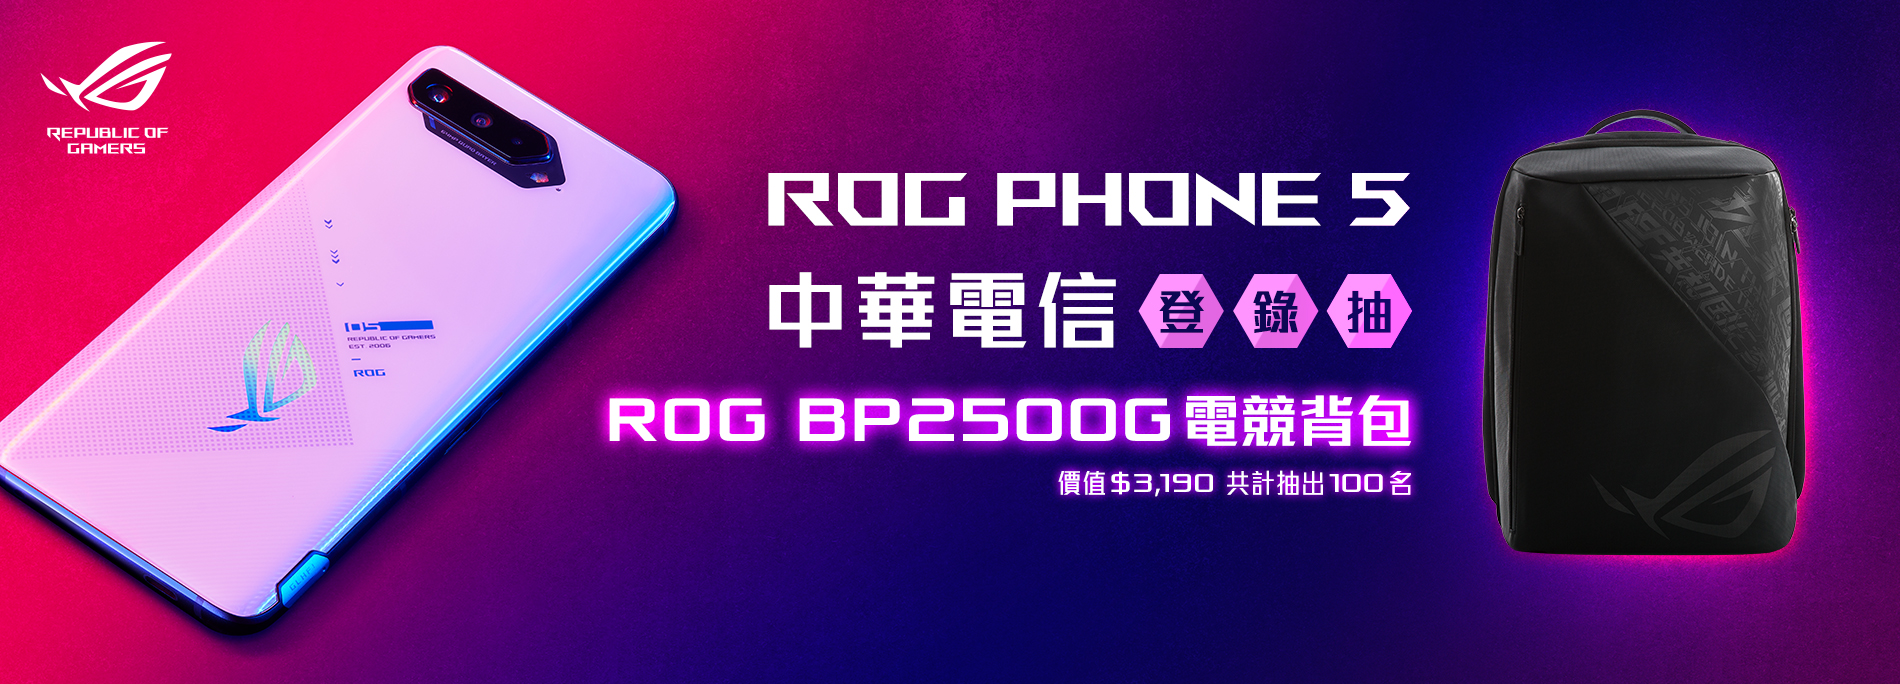 【中華電信獨家】買ROG Phone 5 抽100組「ROG BP2500G電競背包」